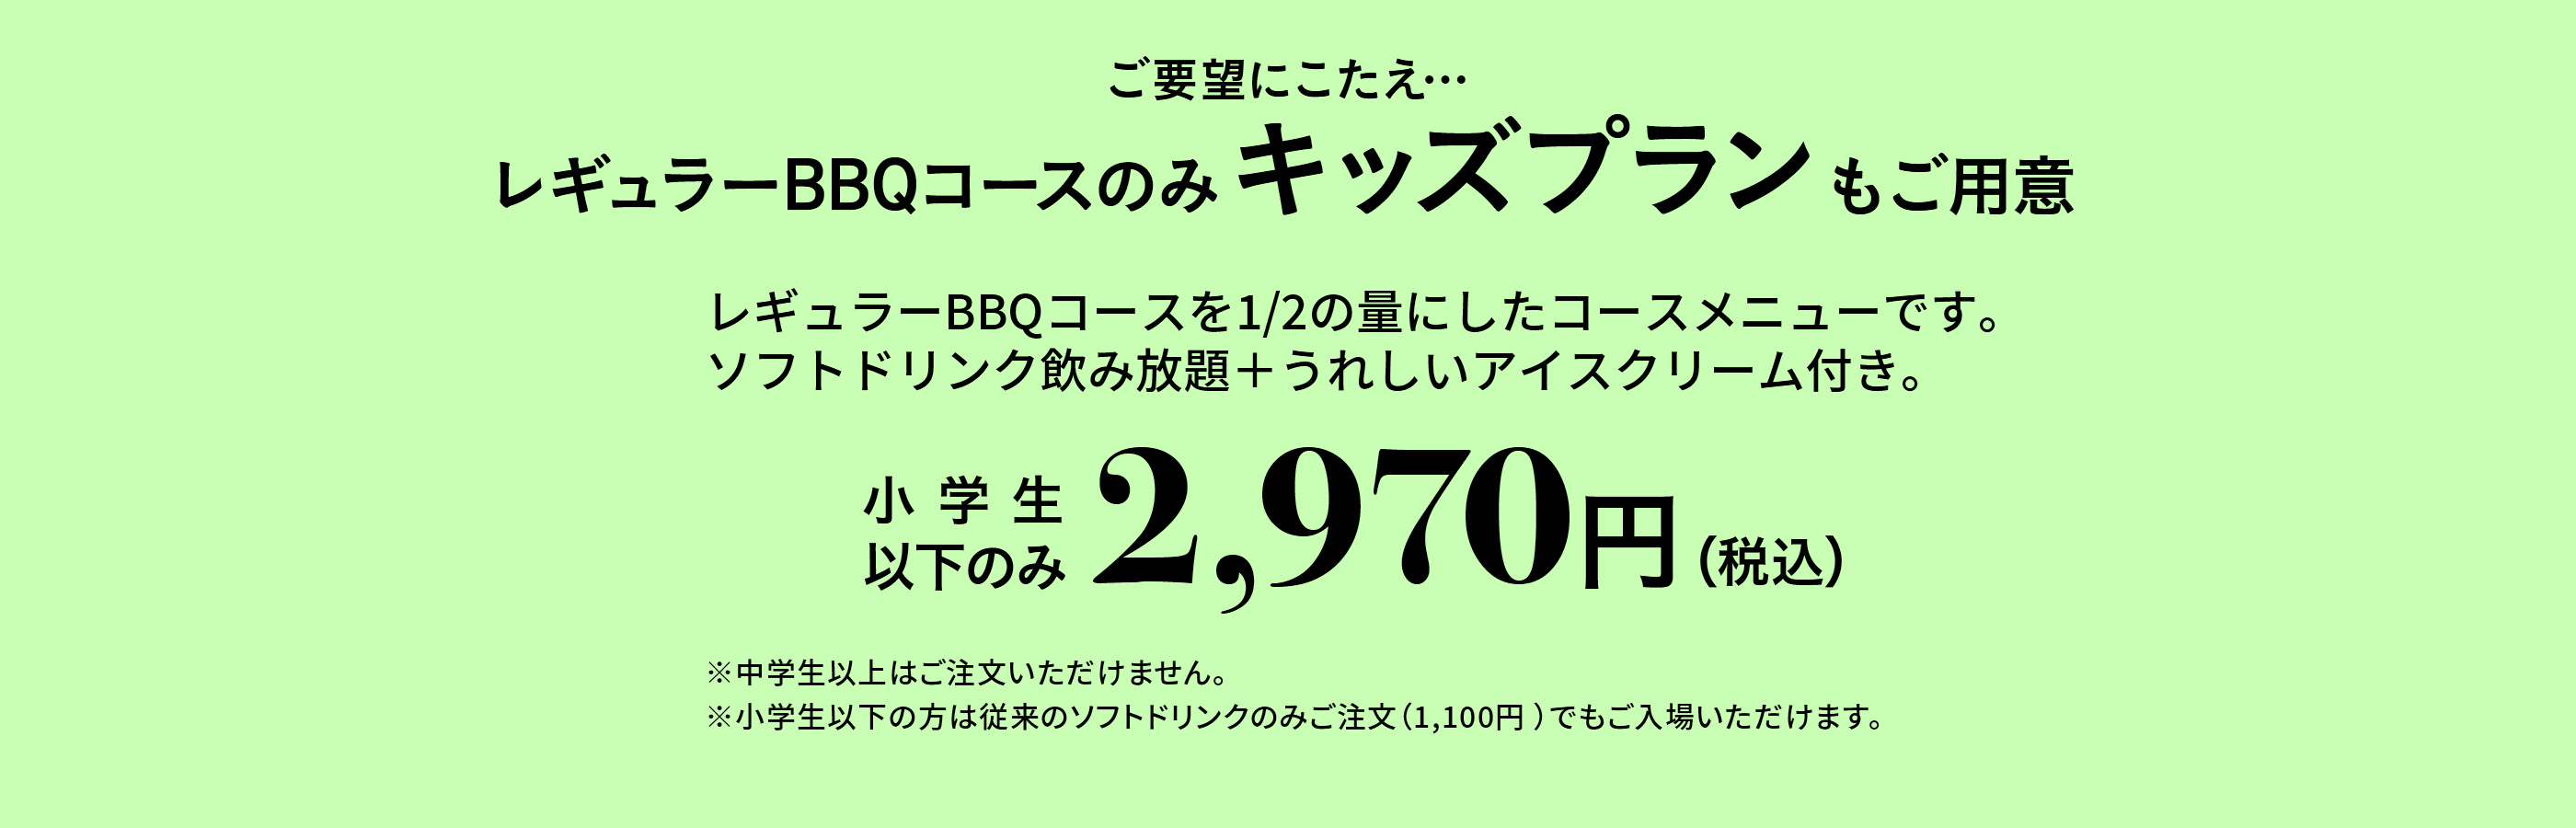 能回答期望…只在只常规BBQ套餐也儿童计划准备的小学生以下2,970日元(含税)